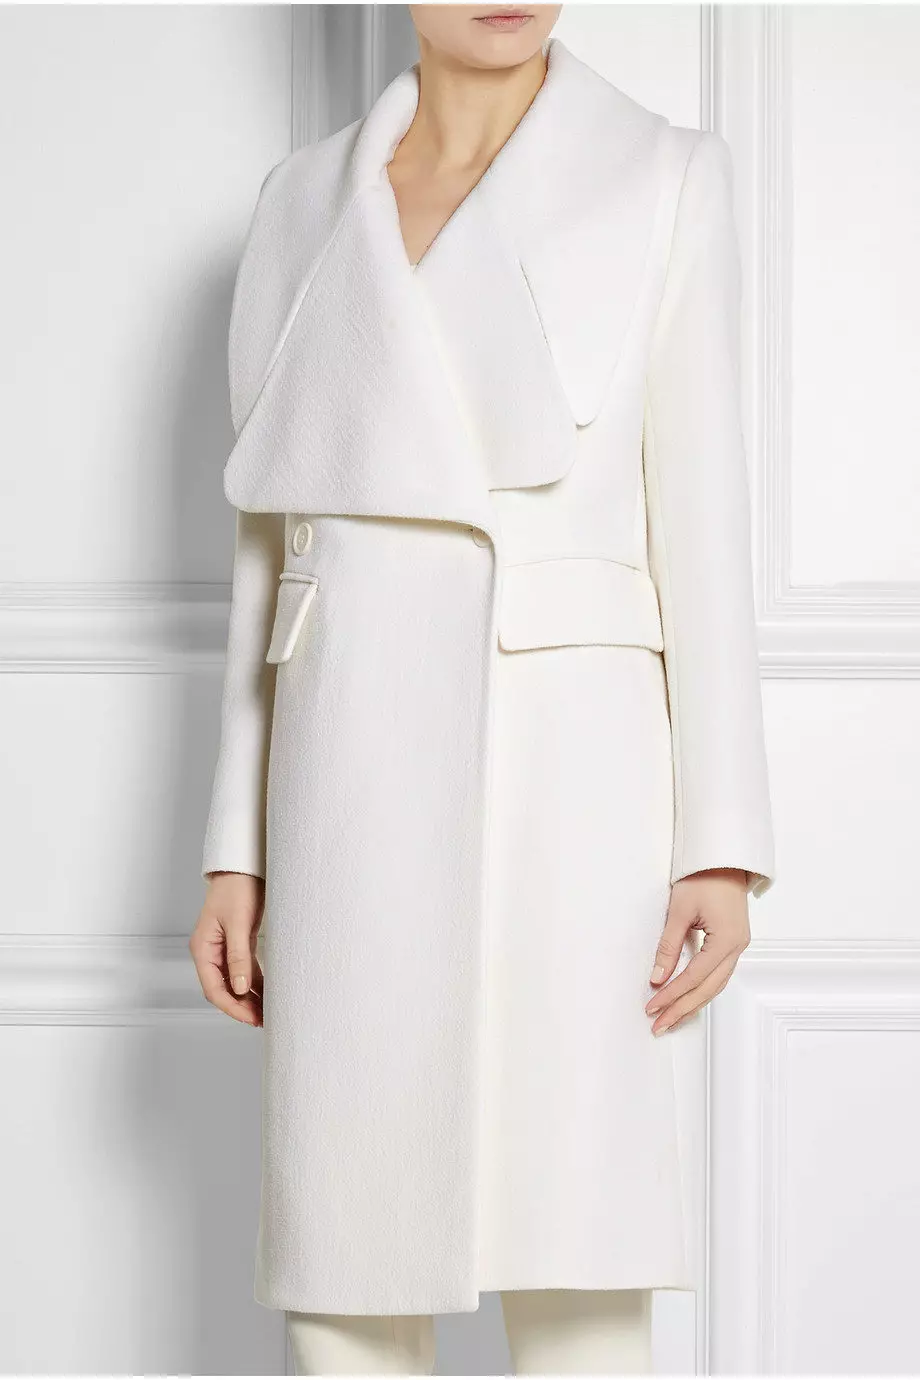 Naisten White Coat (183 kuvaa): Lyhyt, Mango, Valko-Venäjä, kuinka puhdistaa takki, pitkä, huivi valkoinen takki, hupullinen 583_111